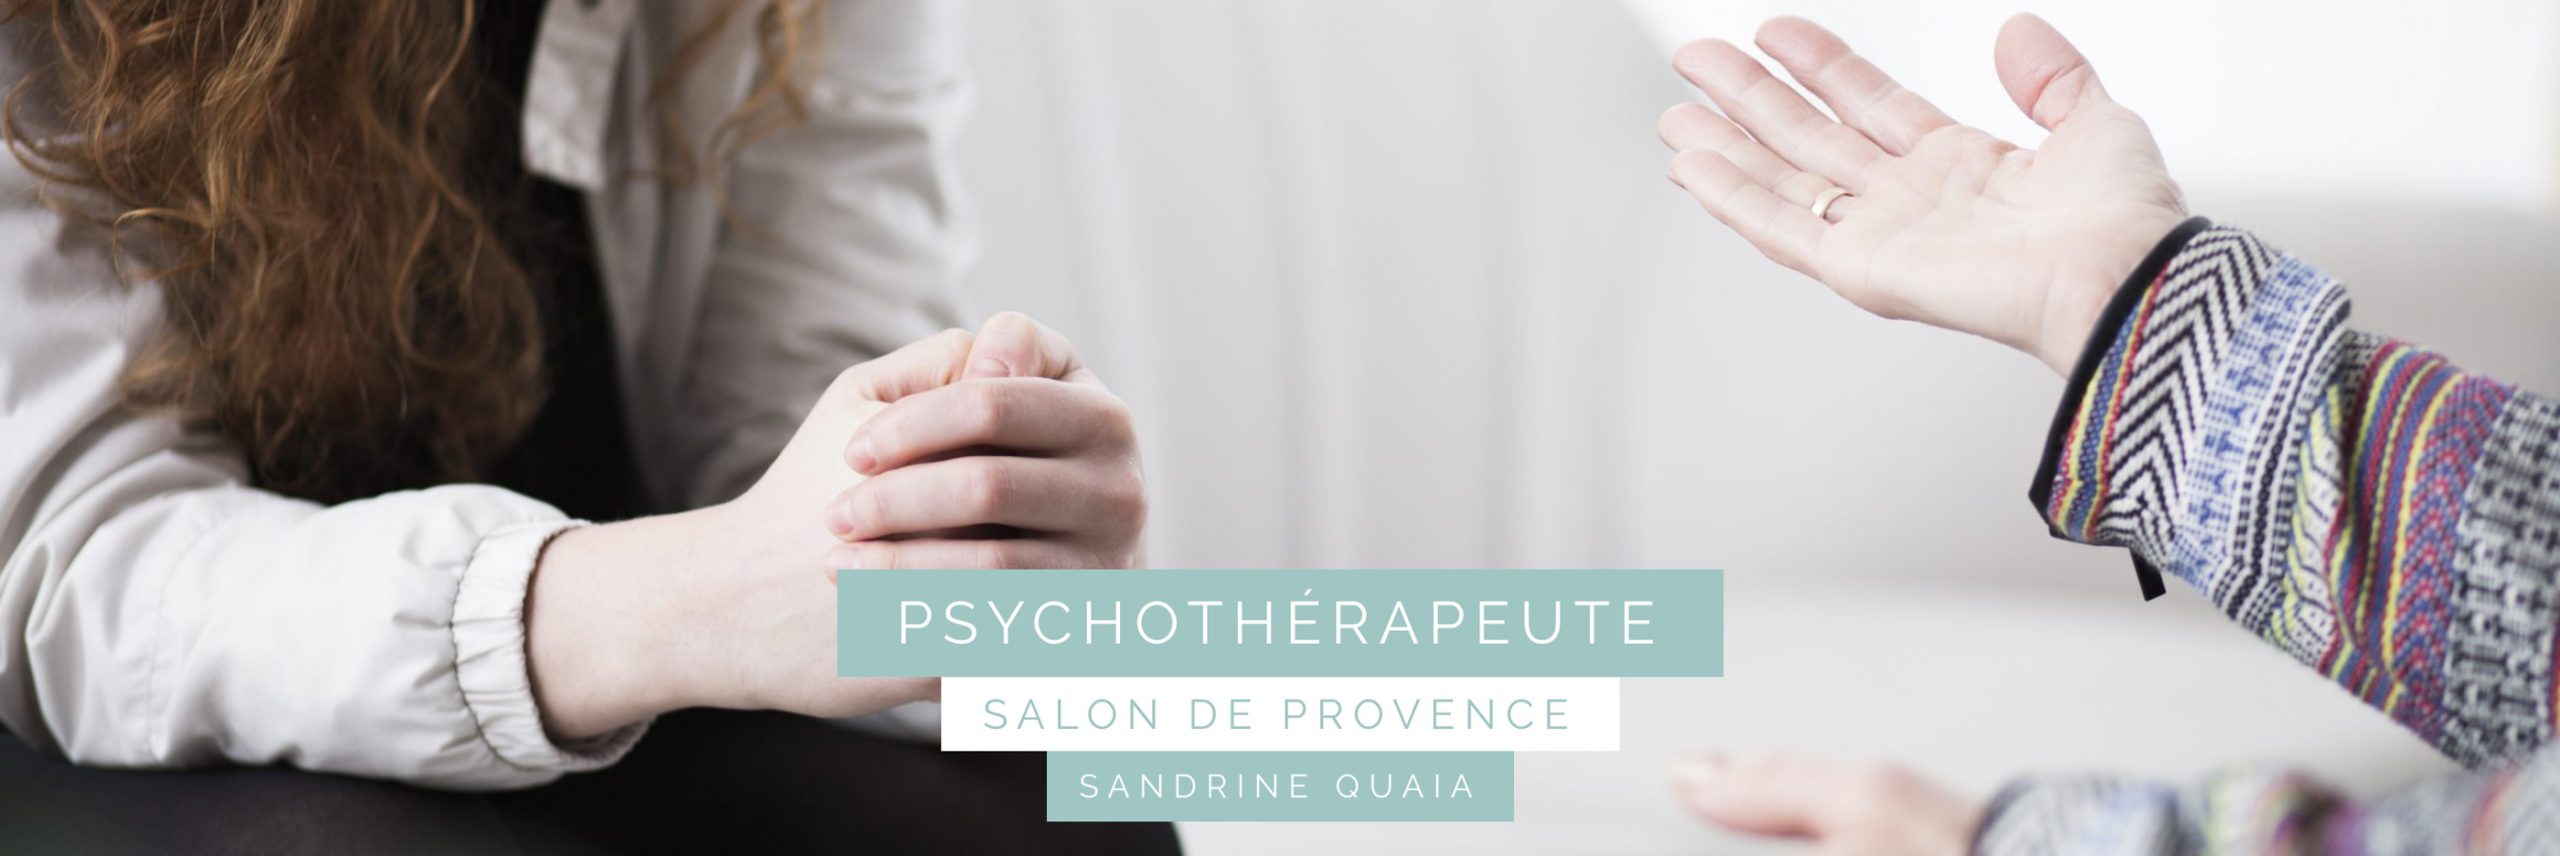 Psychothérapeute Salon de Provence Sandrine Quaia Accueil